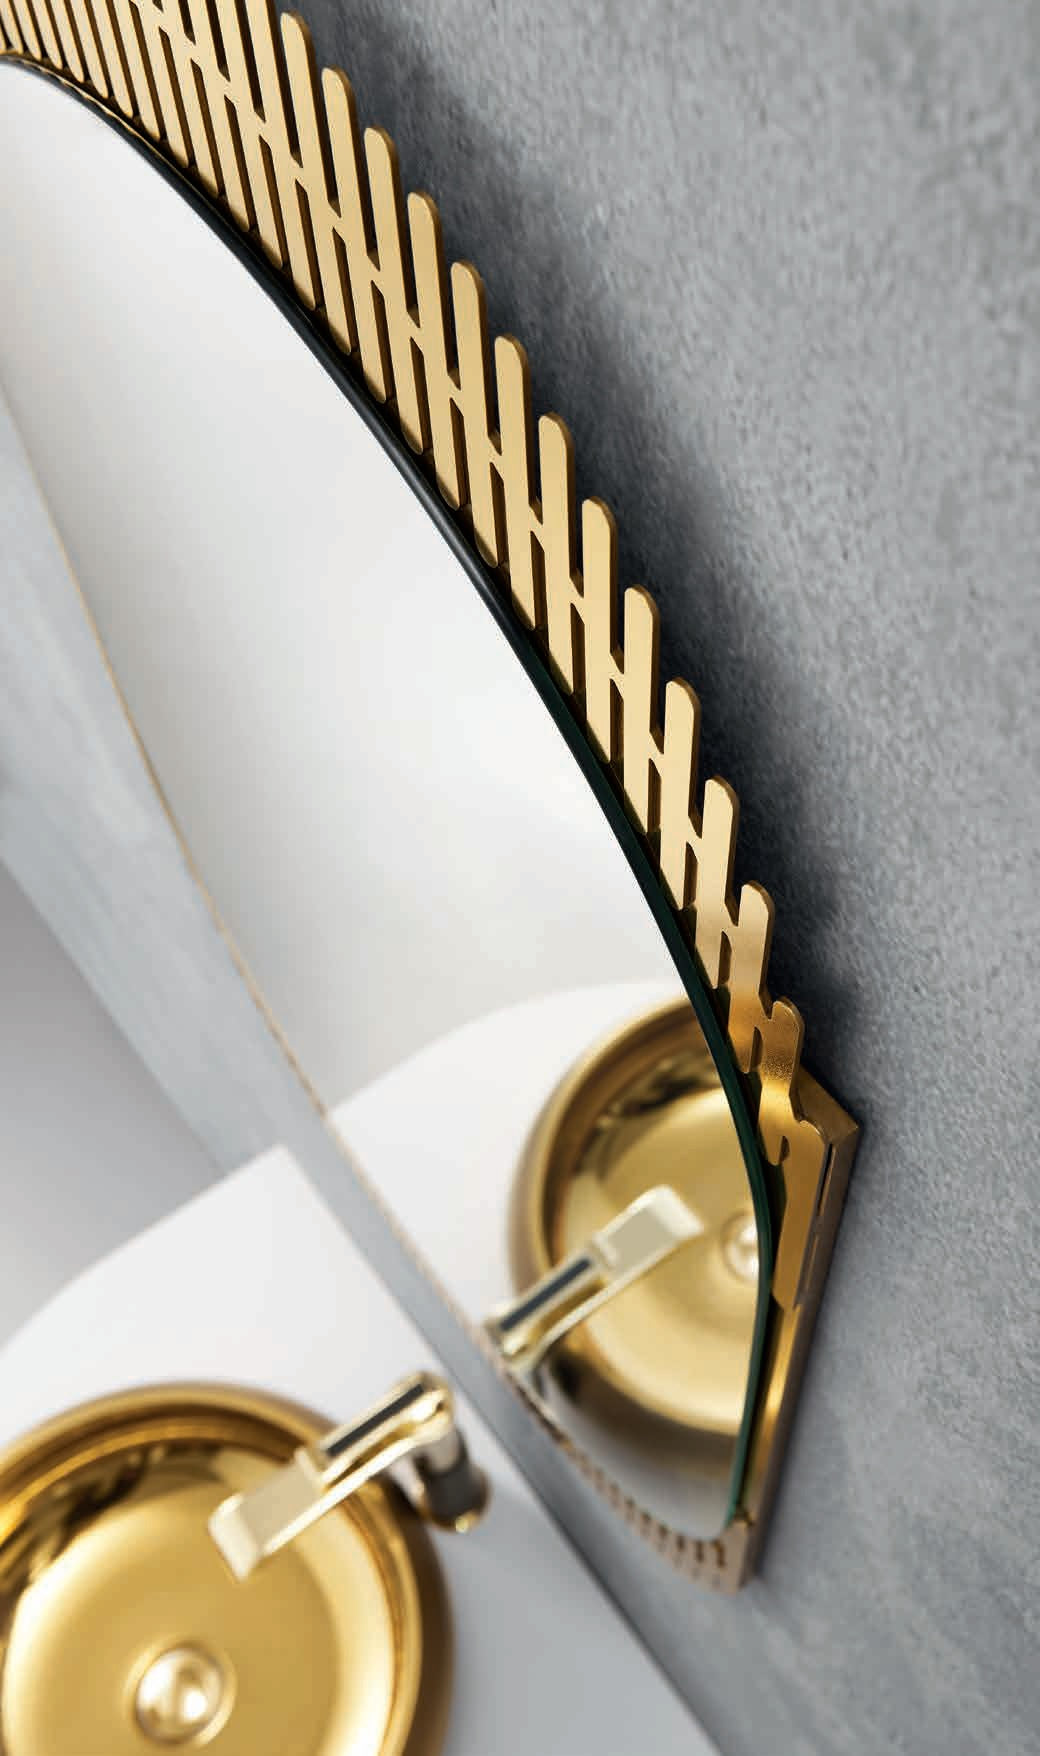 PURE GOLD Luxury Stainless Steel Bathroom Vanity Set